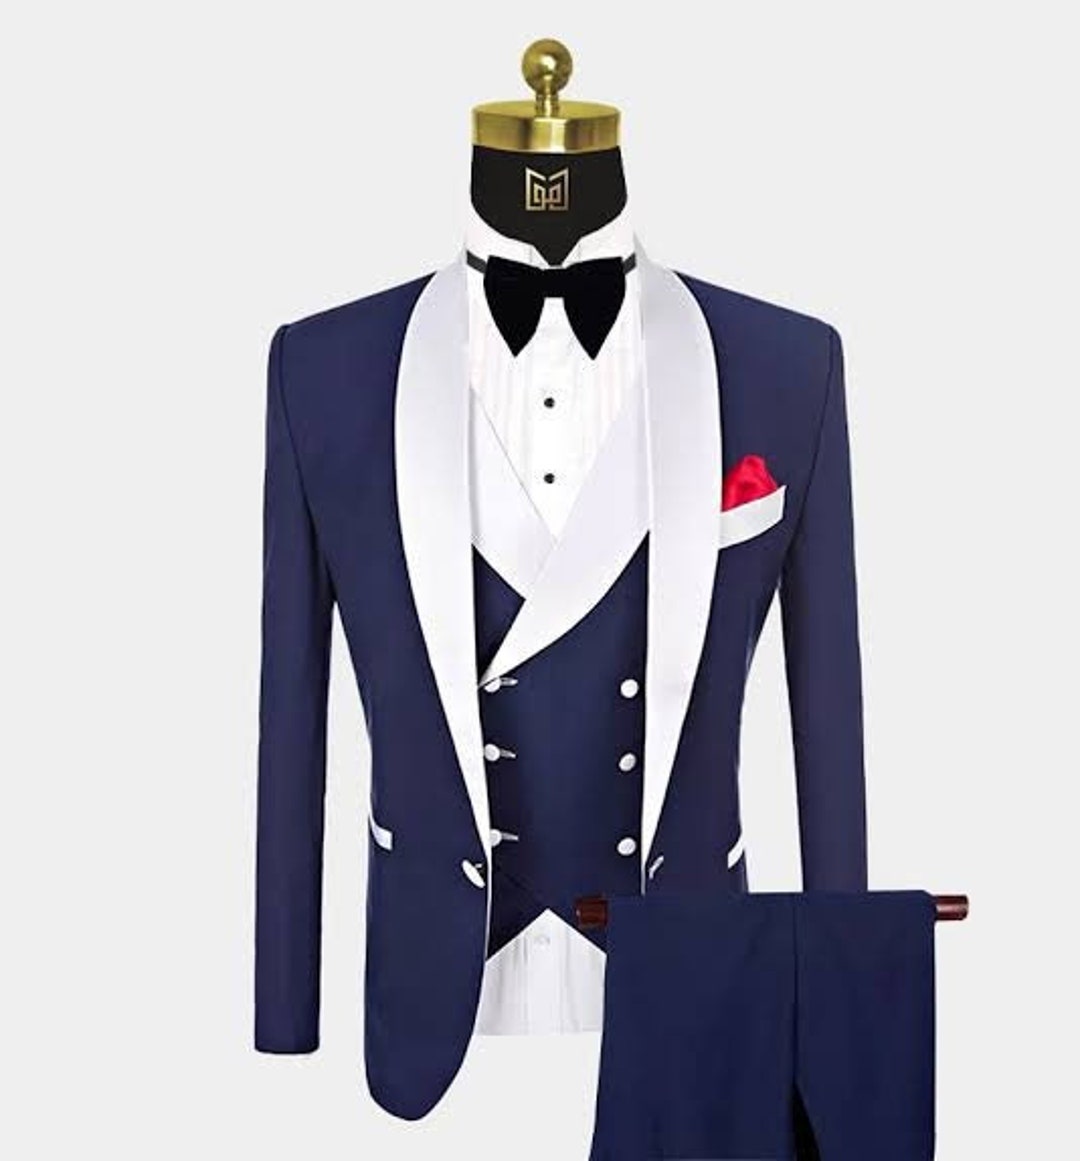 MEN 3 PIECE SUITS Slim Fit Blue Color Premium Fabric Stylish - Etsy